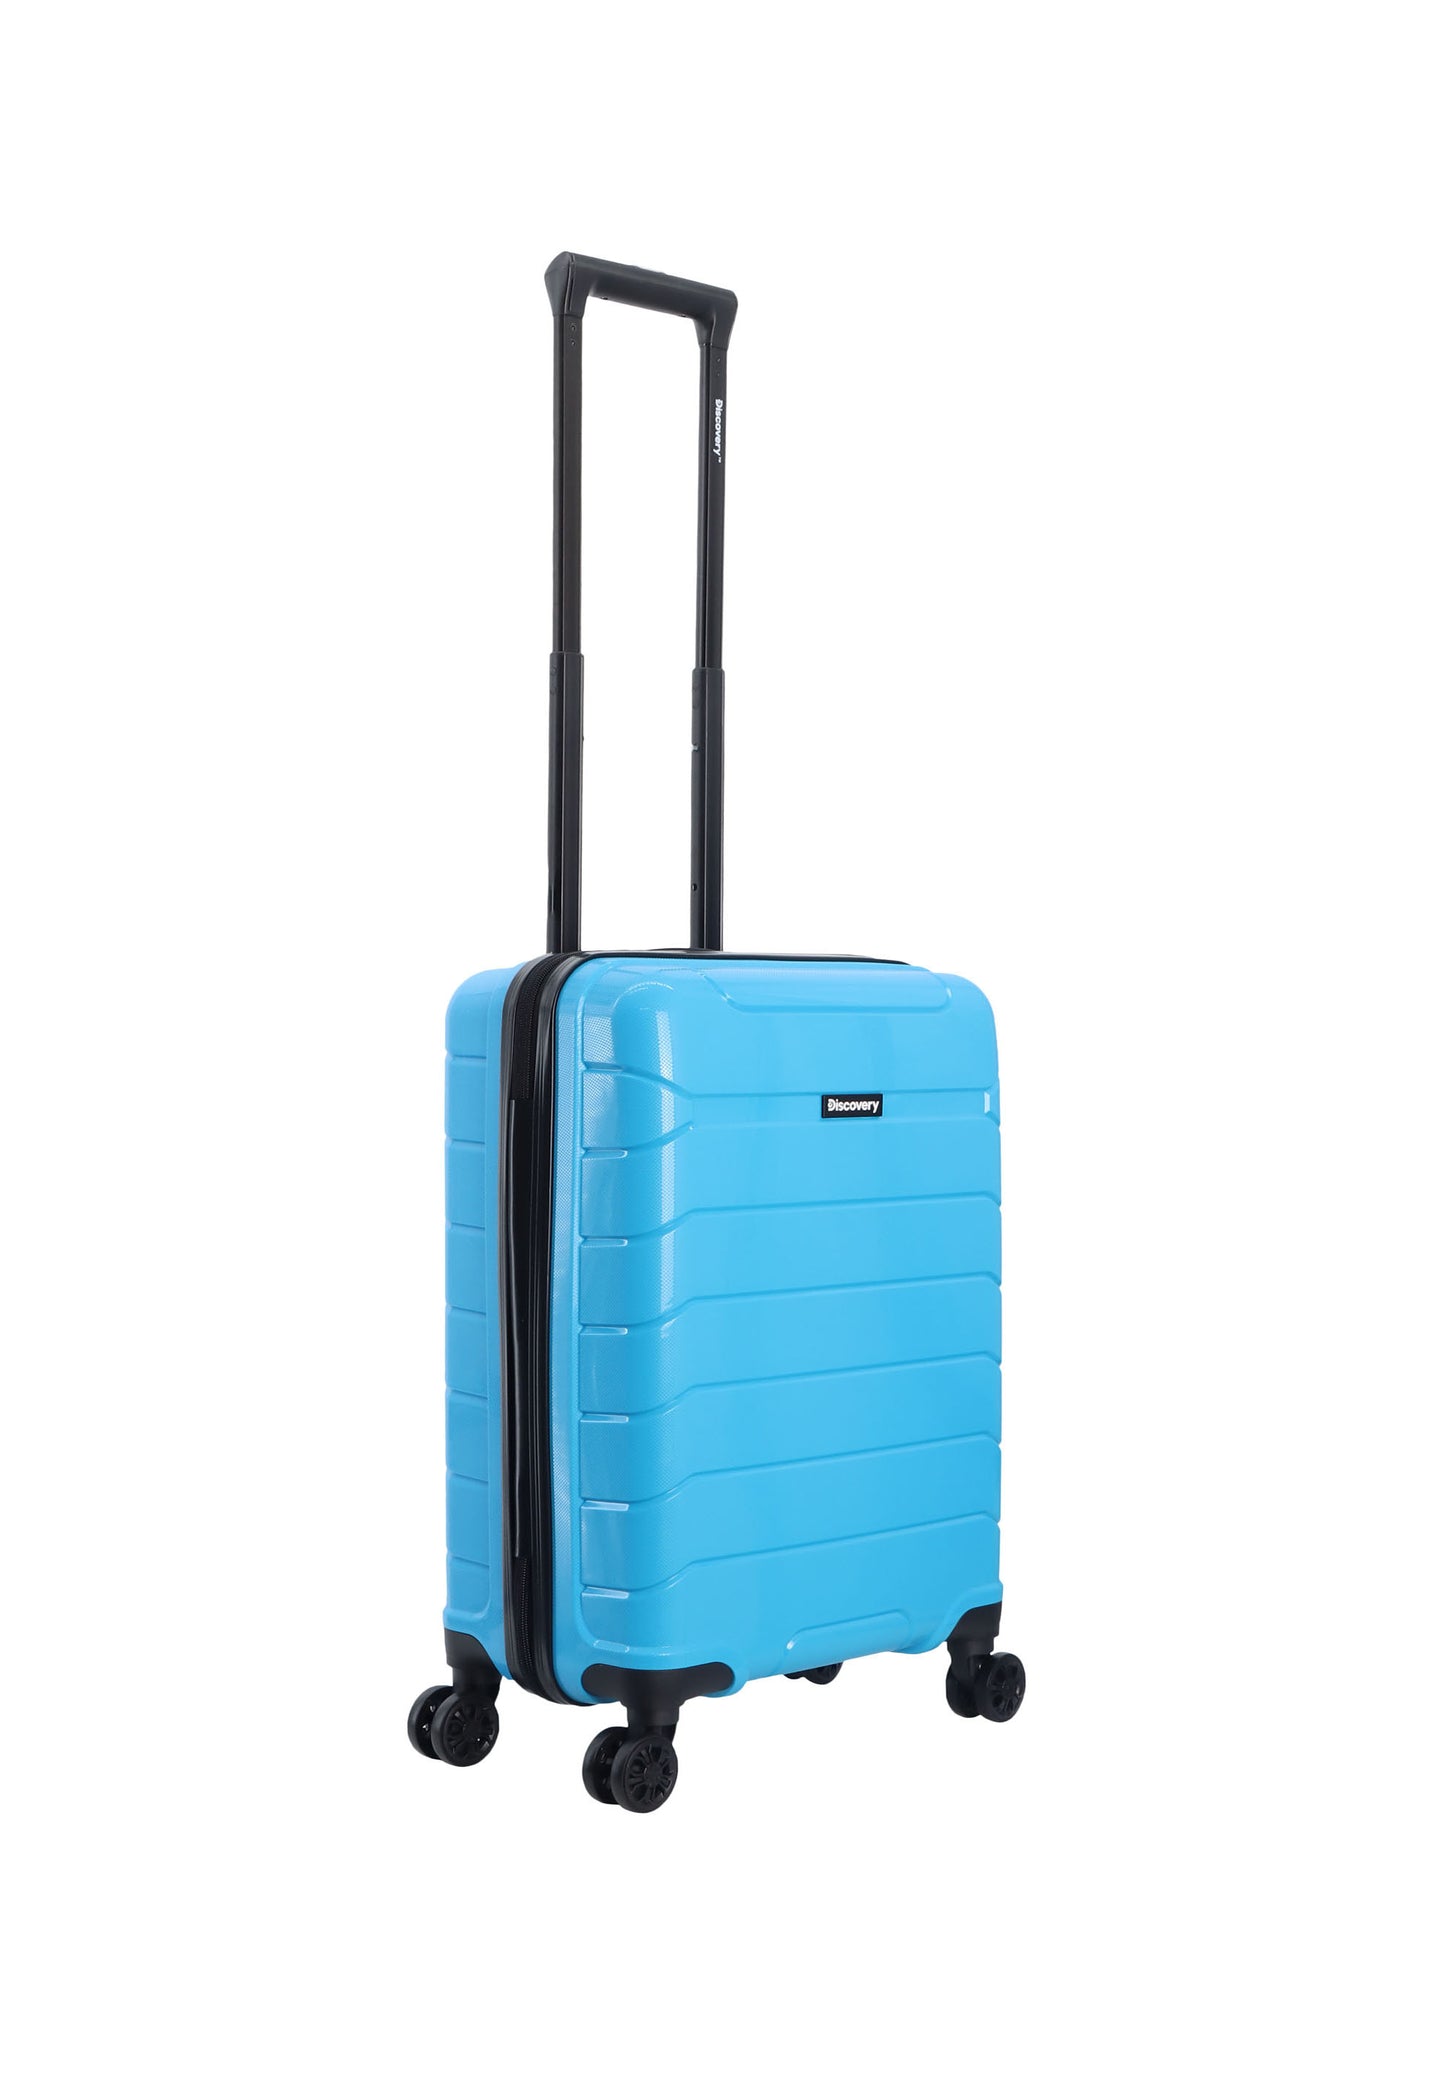 Discovery Skyward Bagage à main Valise rigide / Trolley / Valise de voyage - 55 cm (Petit) - Bleu